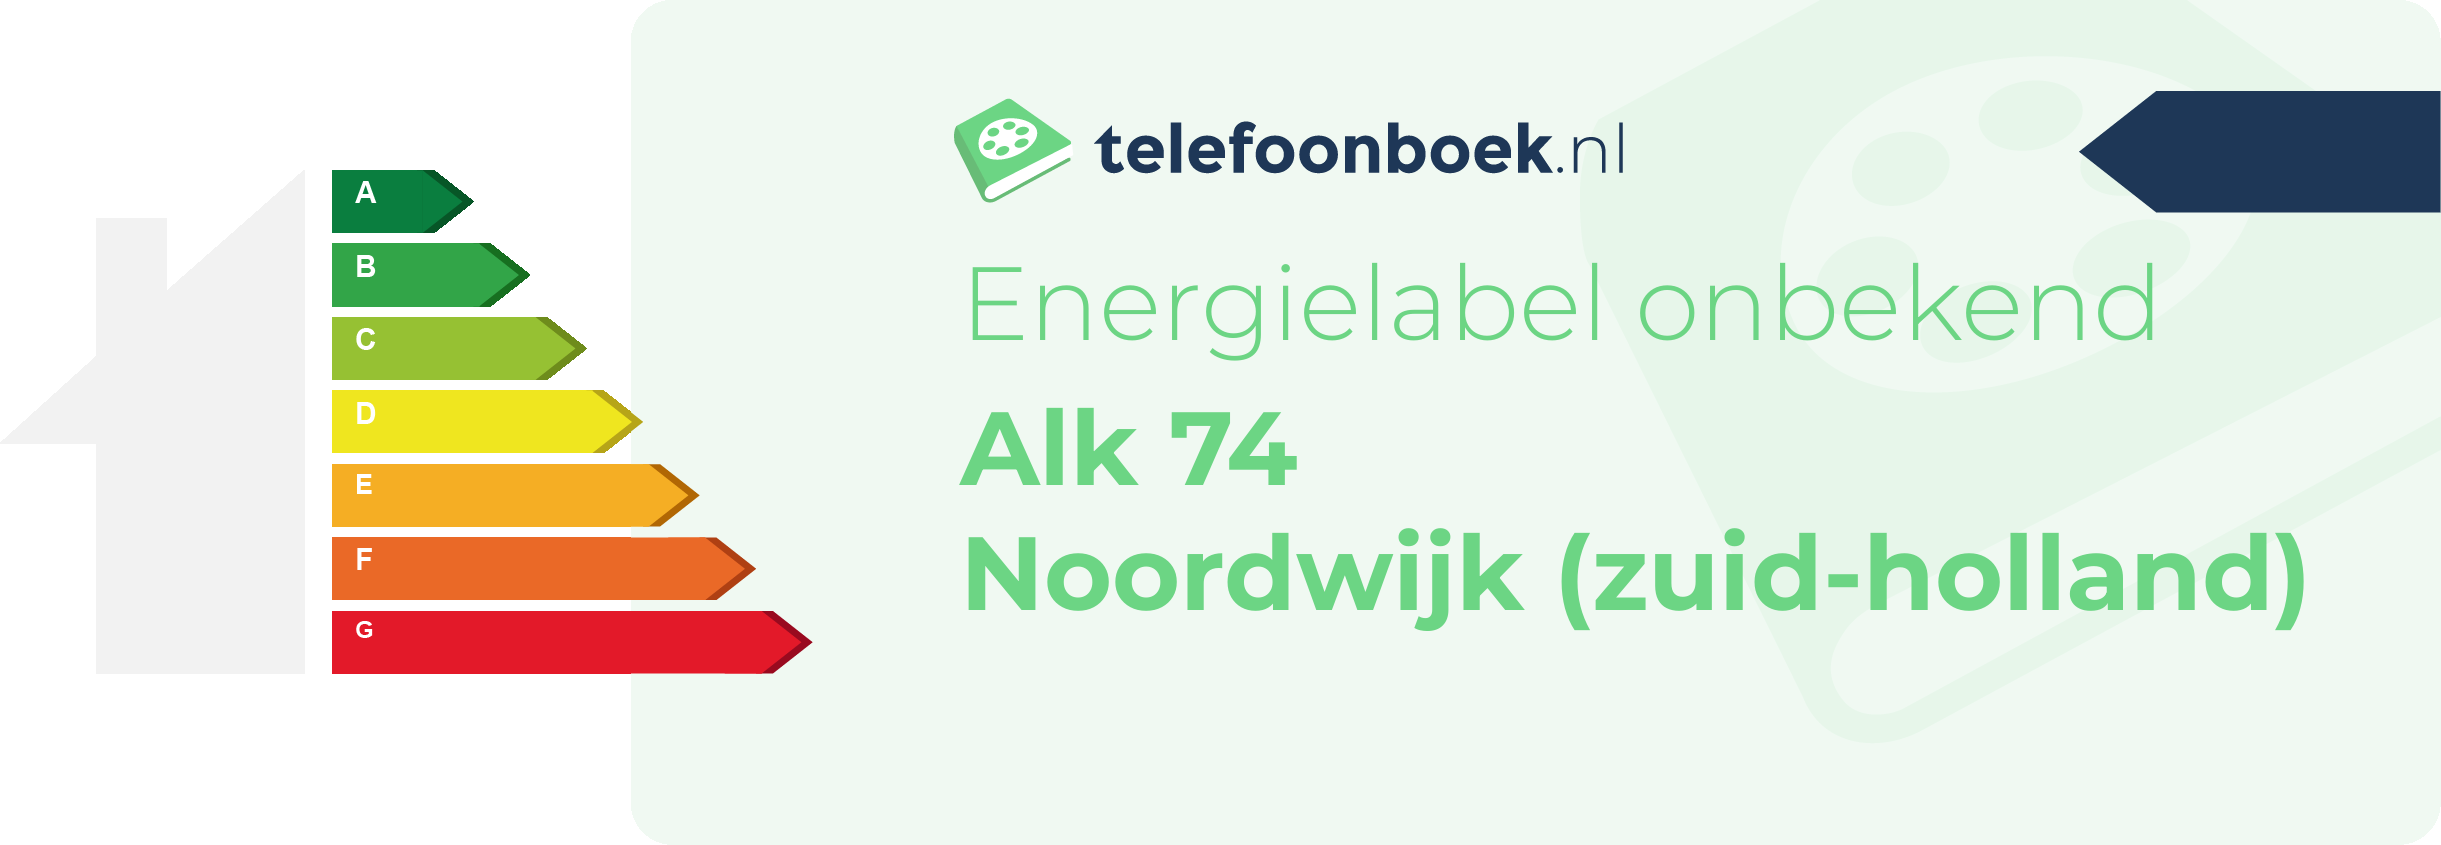 Energielabel Alk 74 Noordwijk (Zuid-Holland)